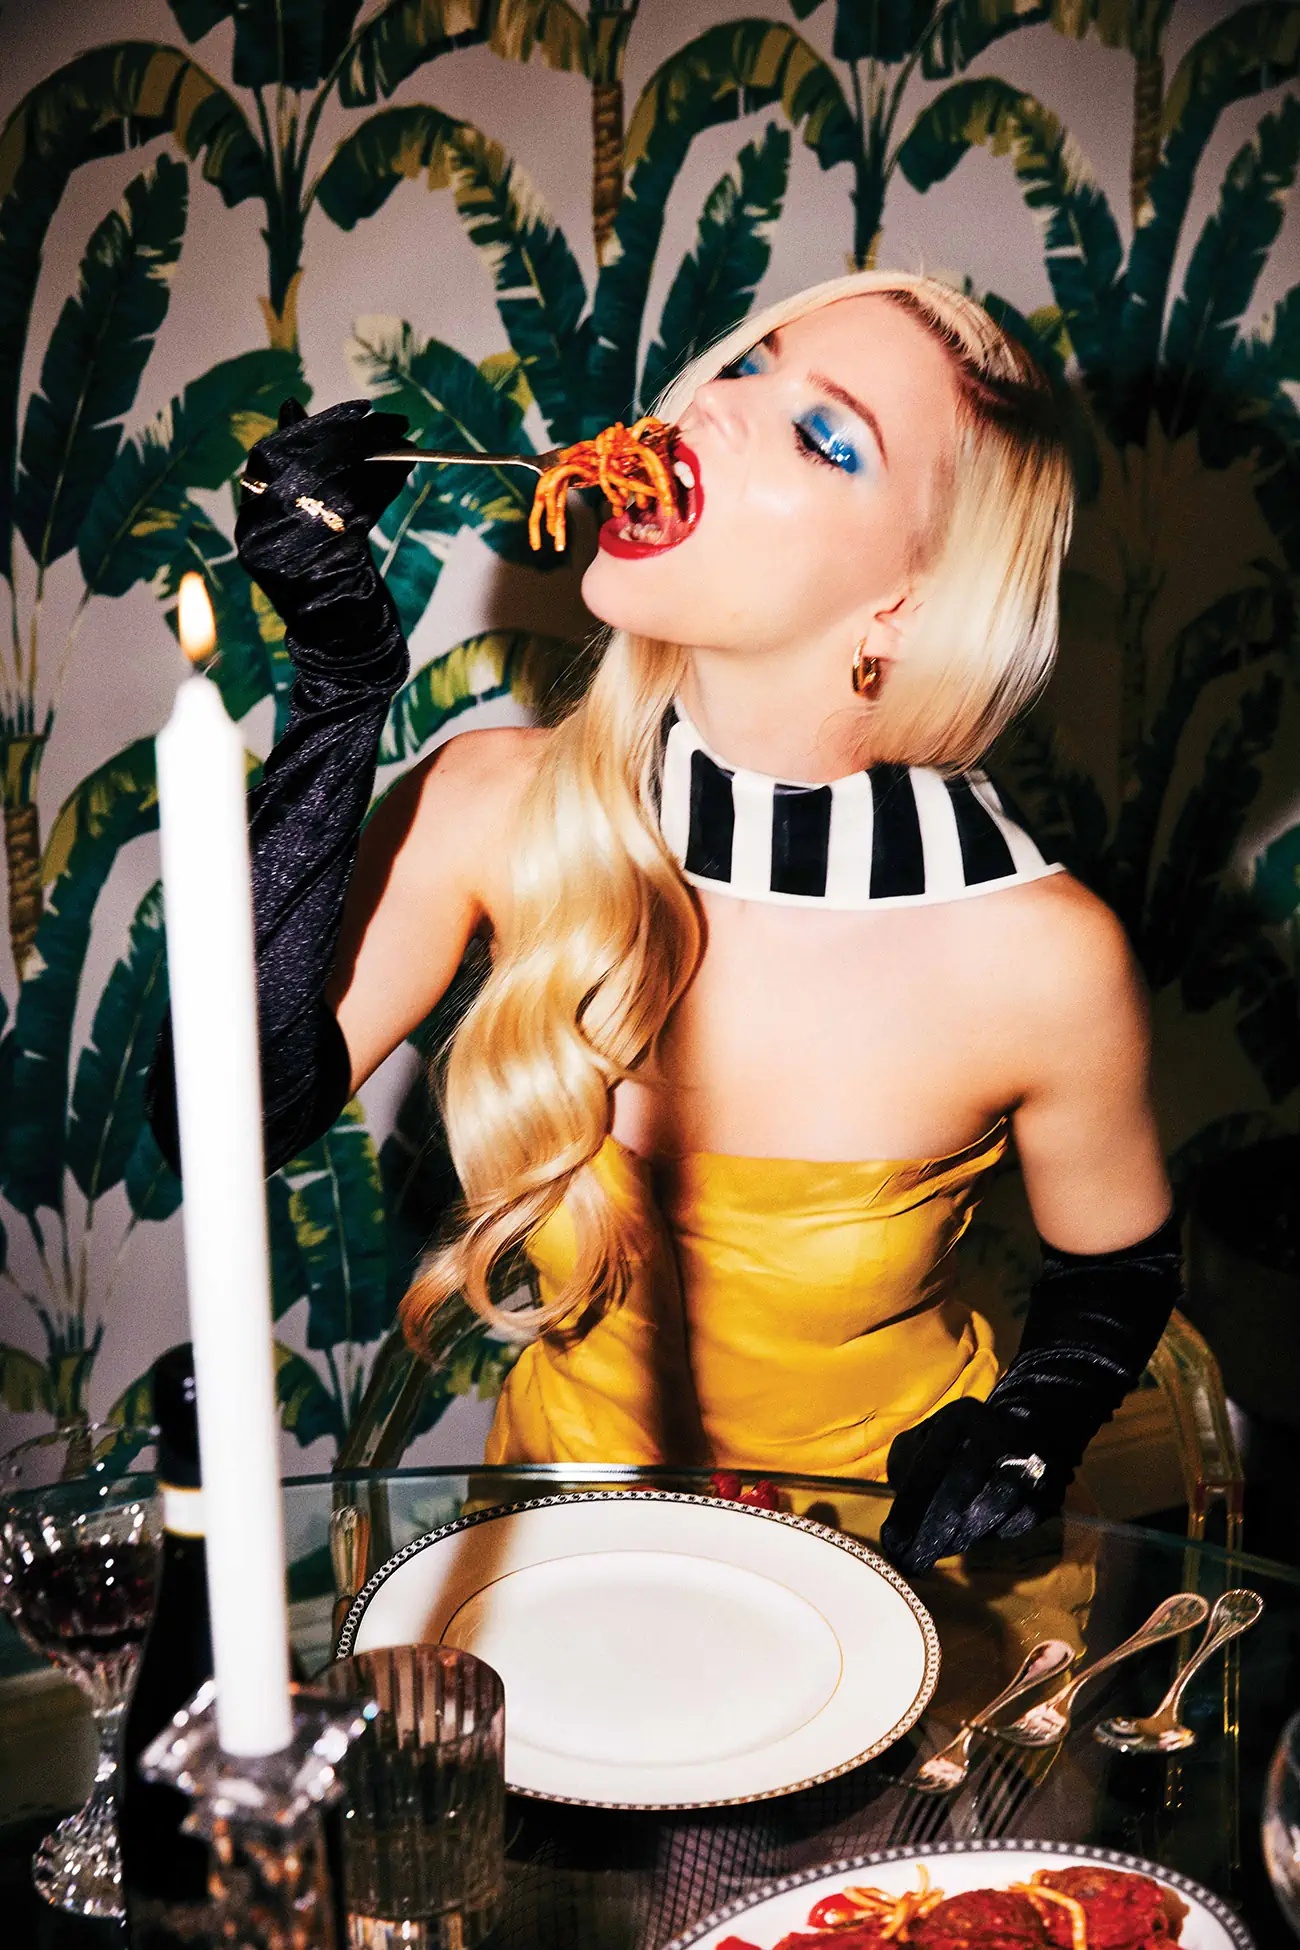 Anya Taylor-Joy covers Flaunt Magazine Issue 192 by Ellen von Unwerth